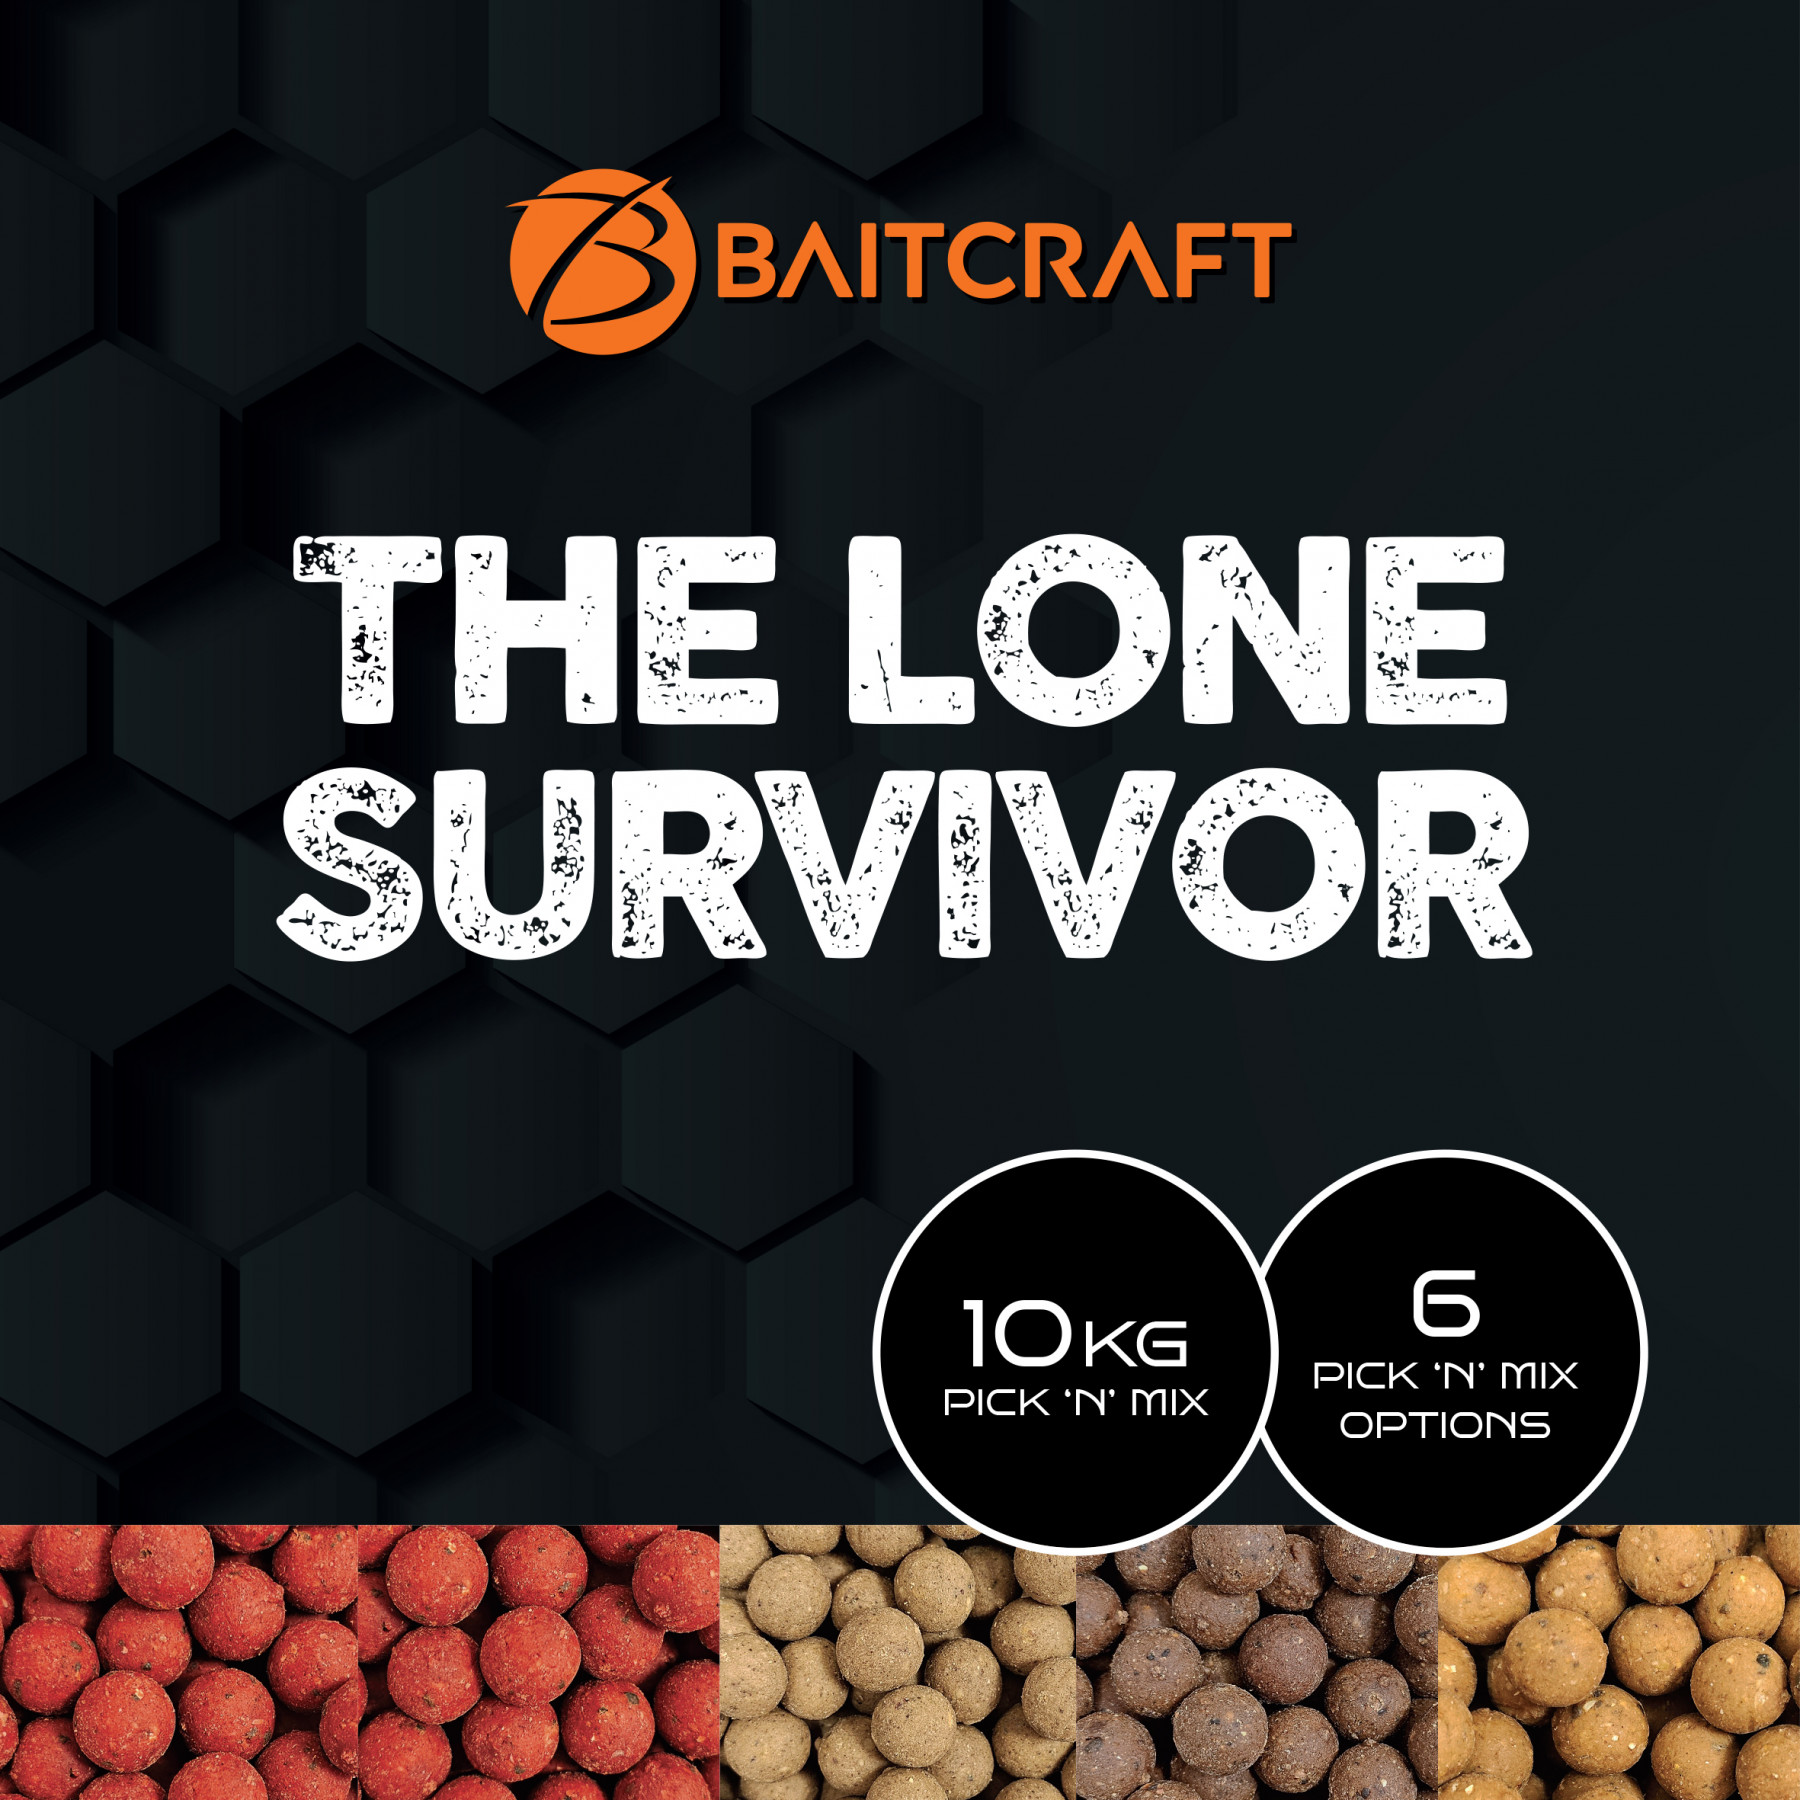 THE BAITCRAFT LONE SURVIVOR - 10KG PICK 'N' MIX